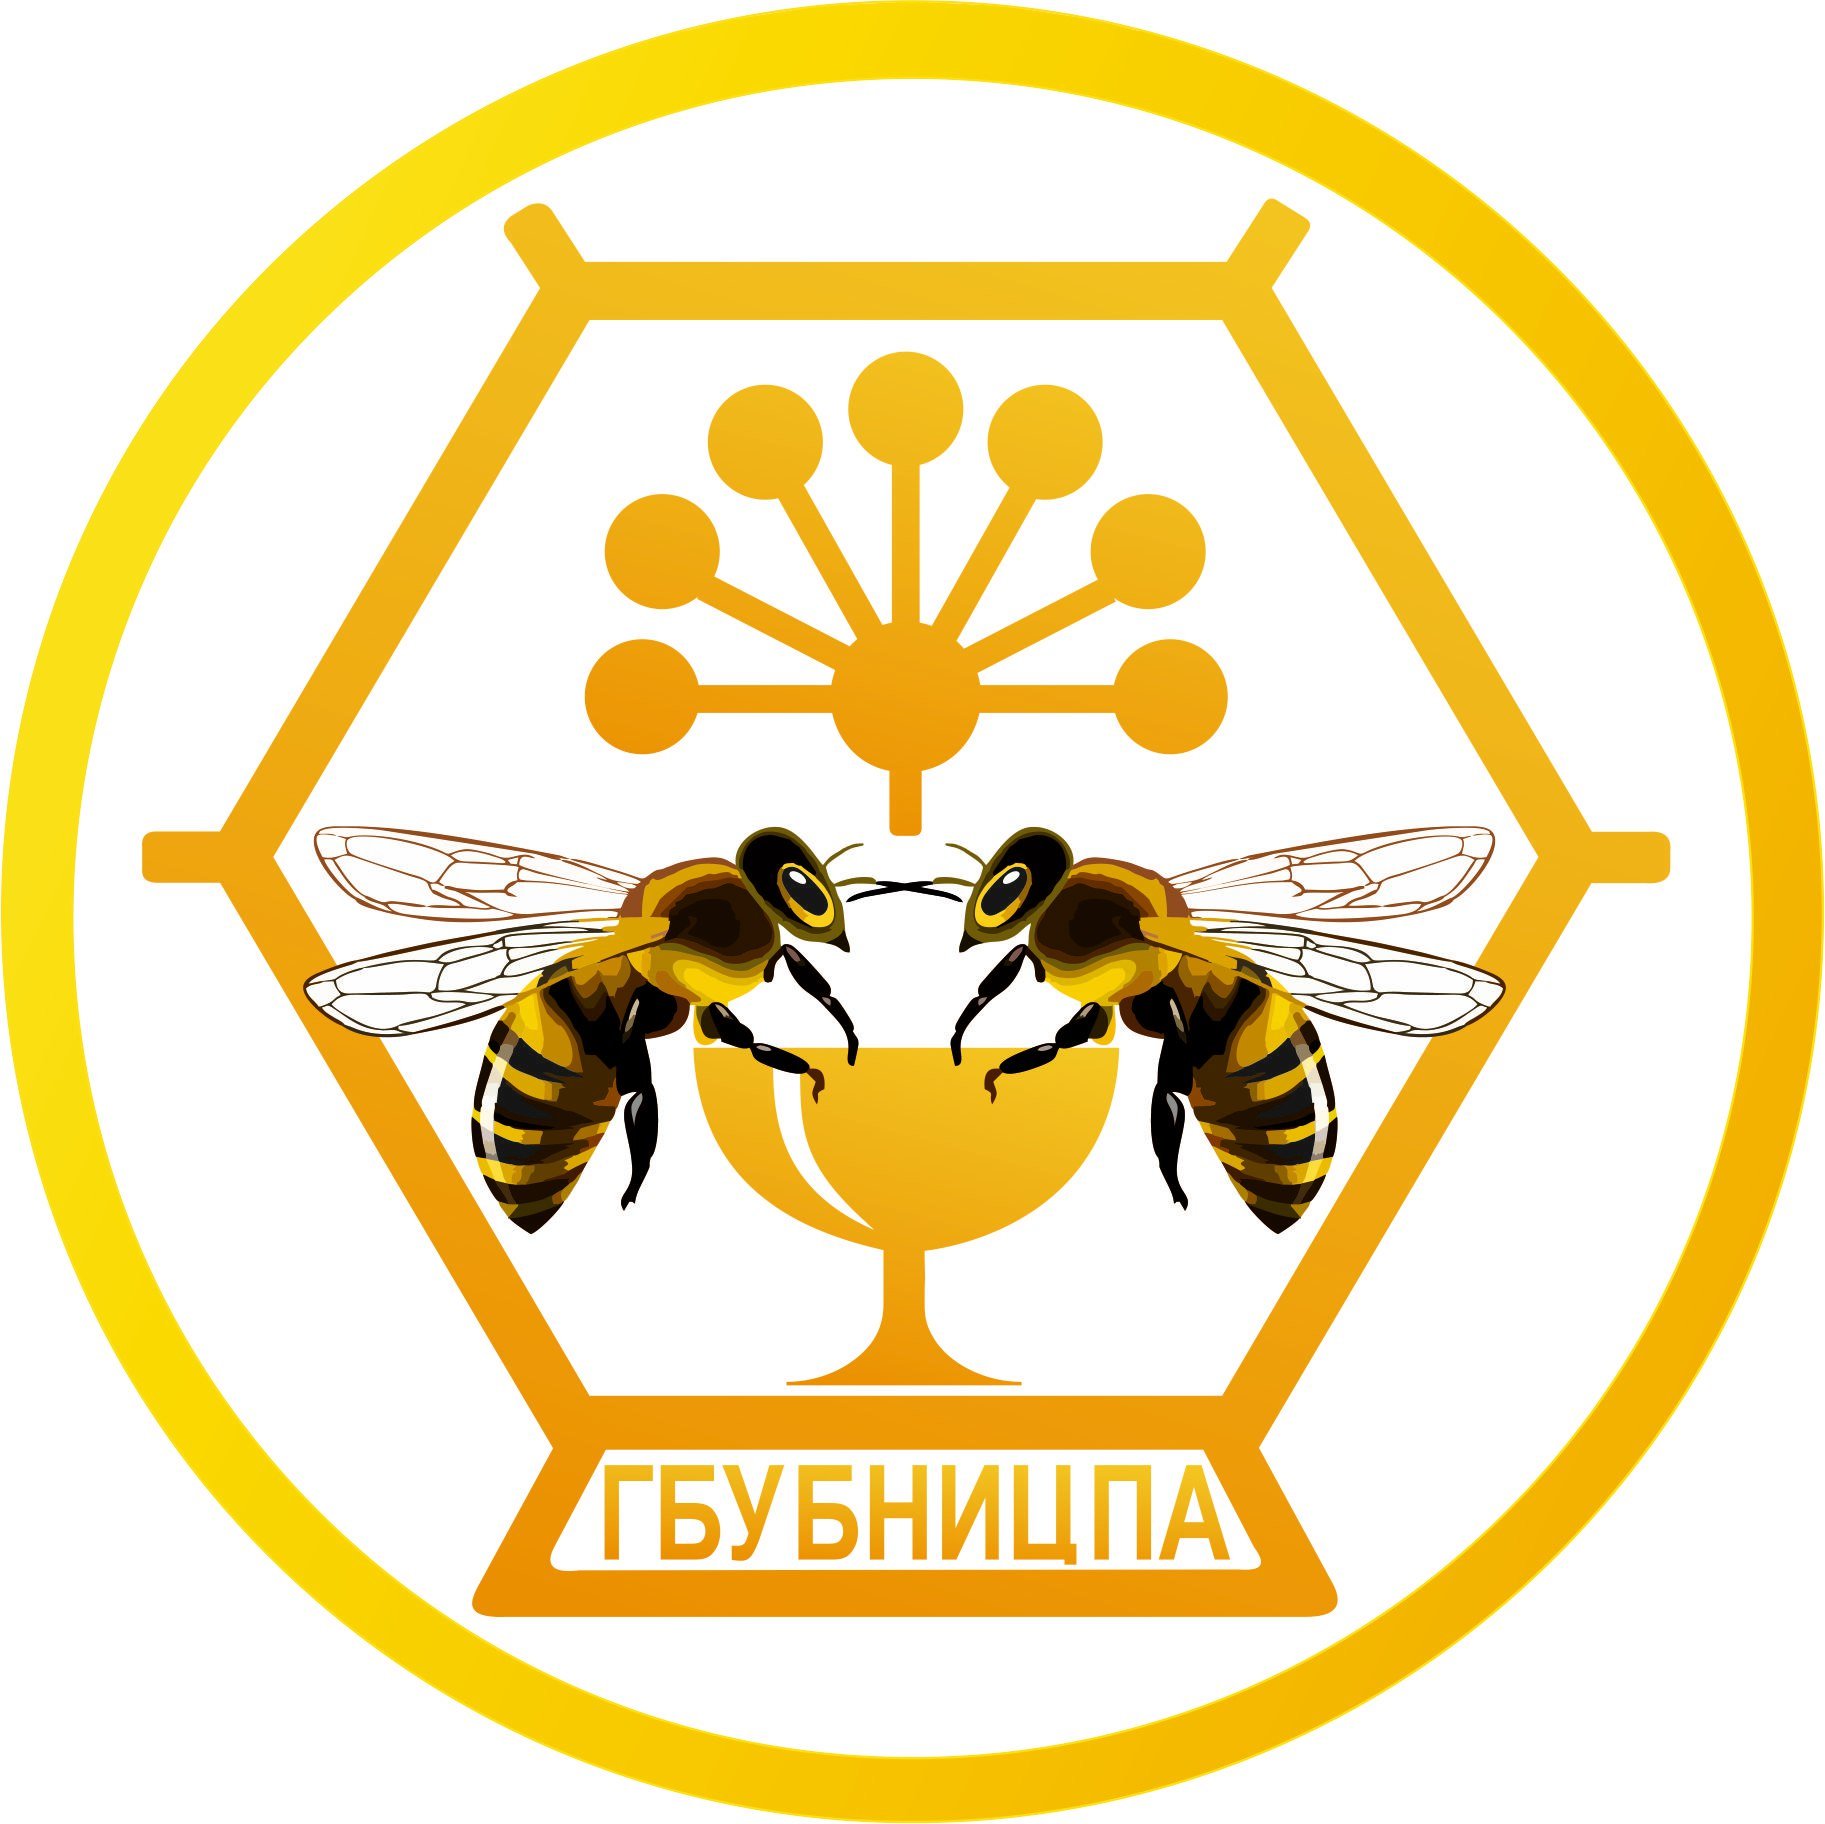 Логотип с медовыми сотами